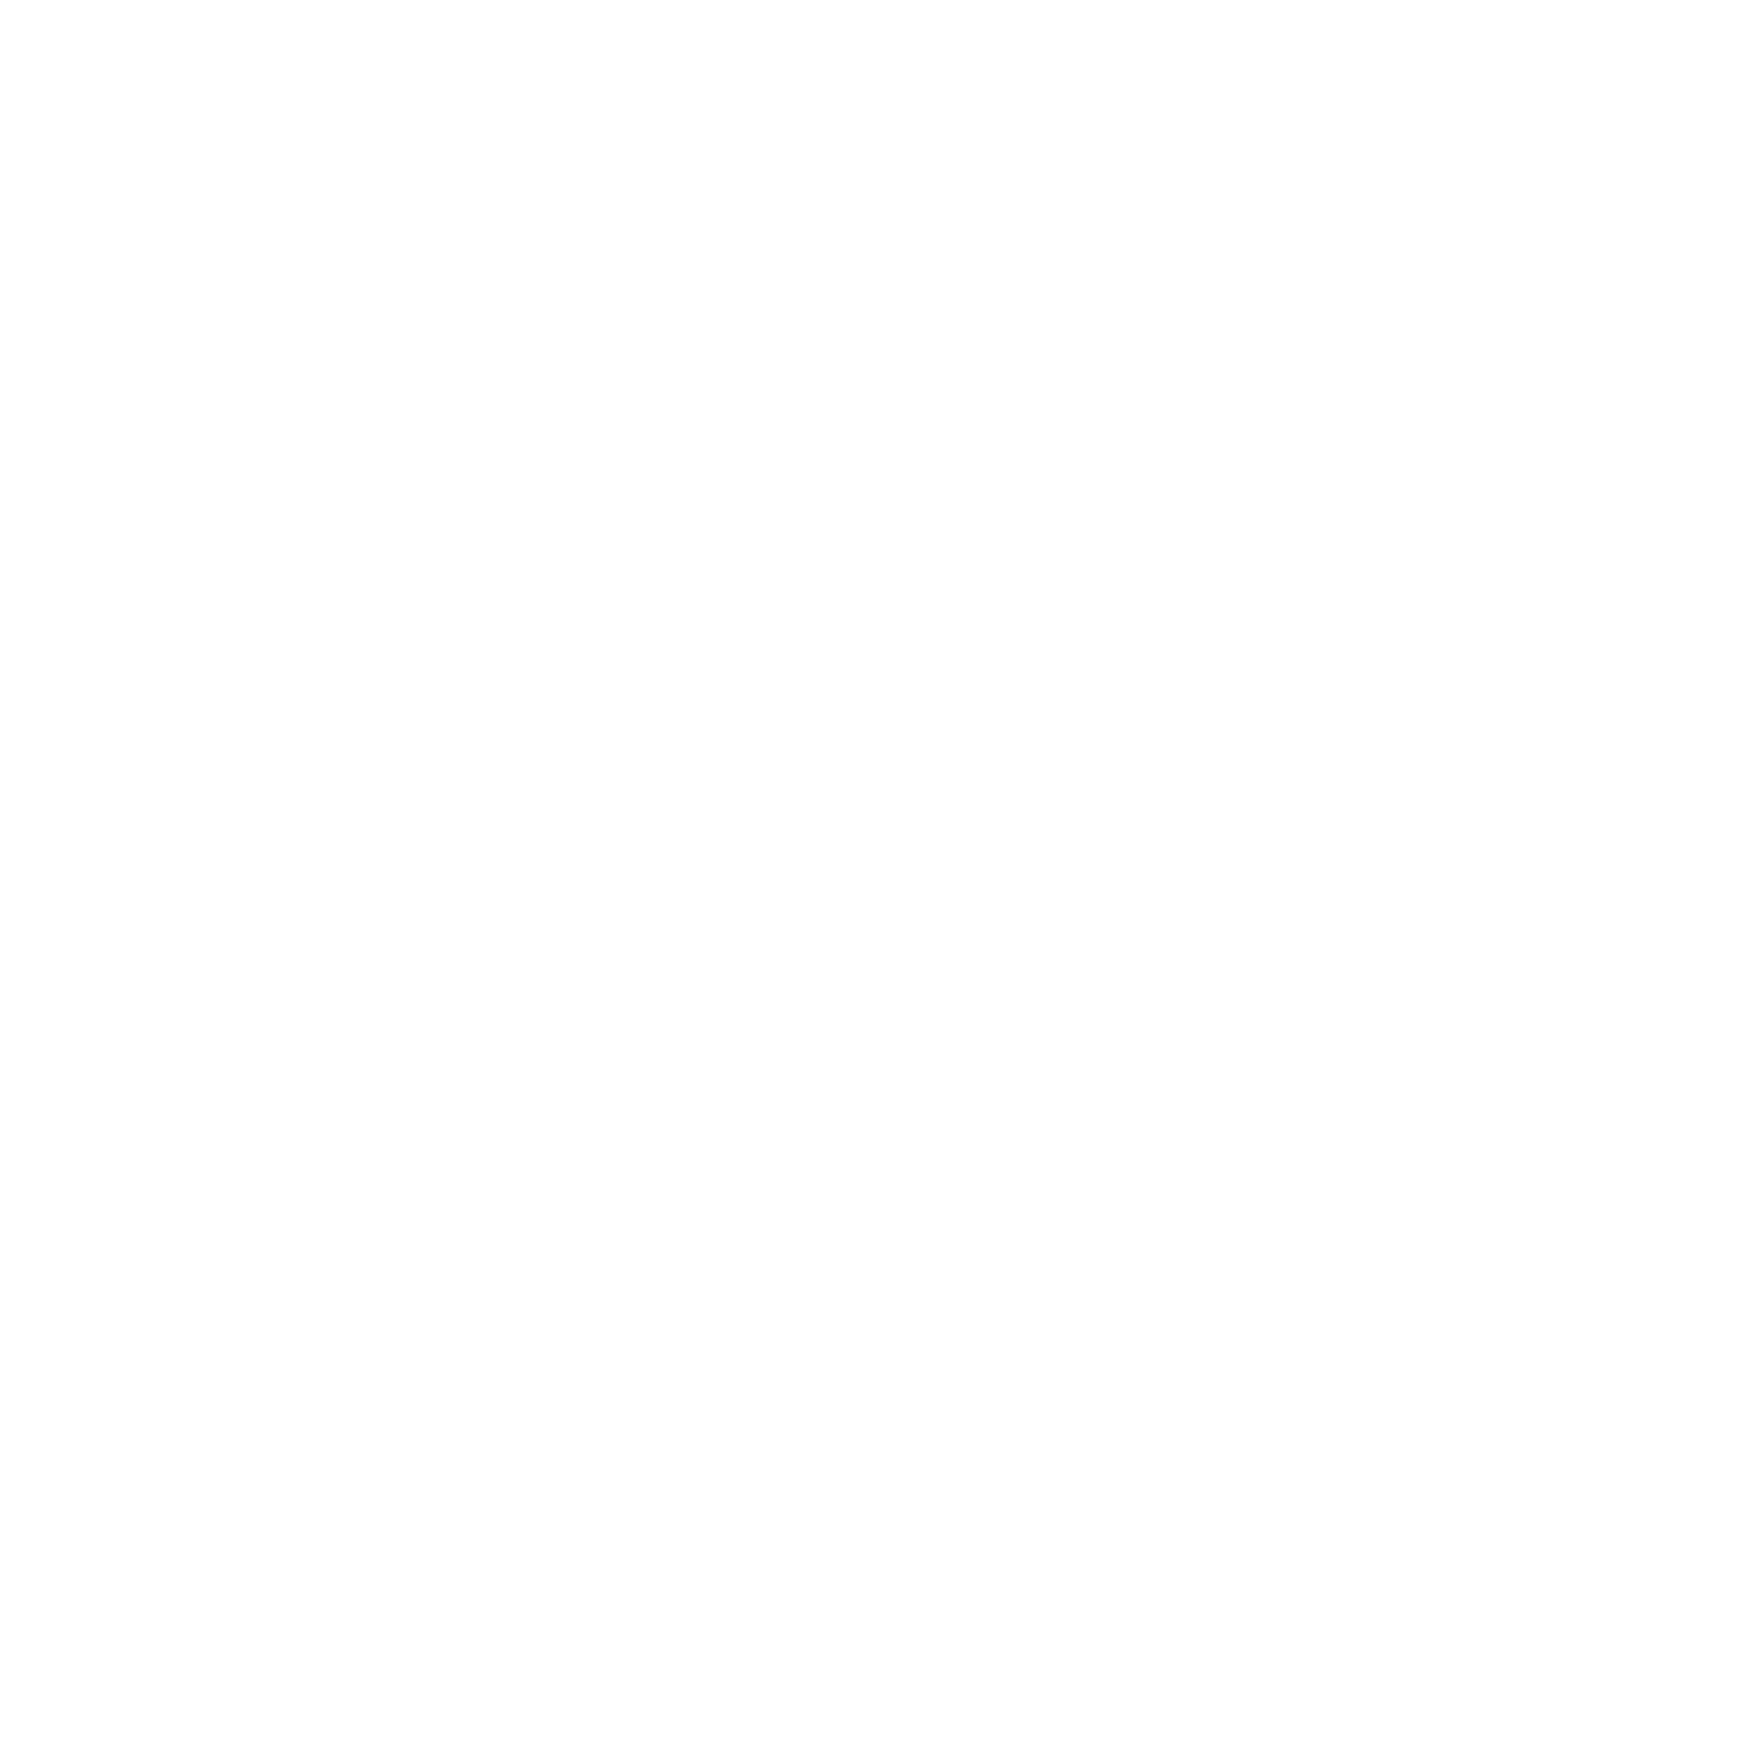 Big Tony Fellow site